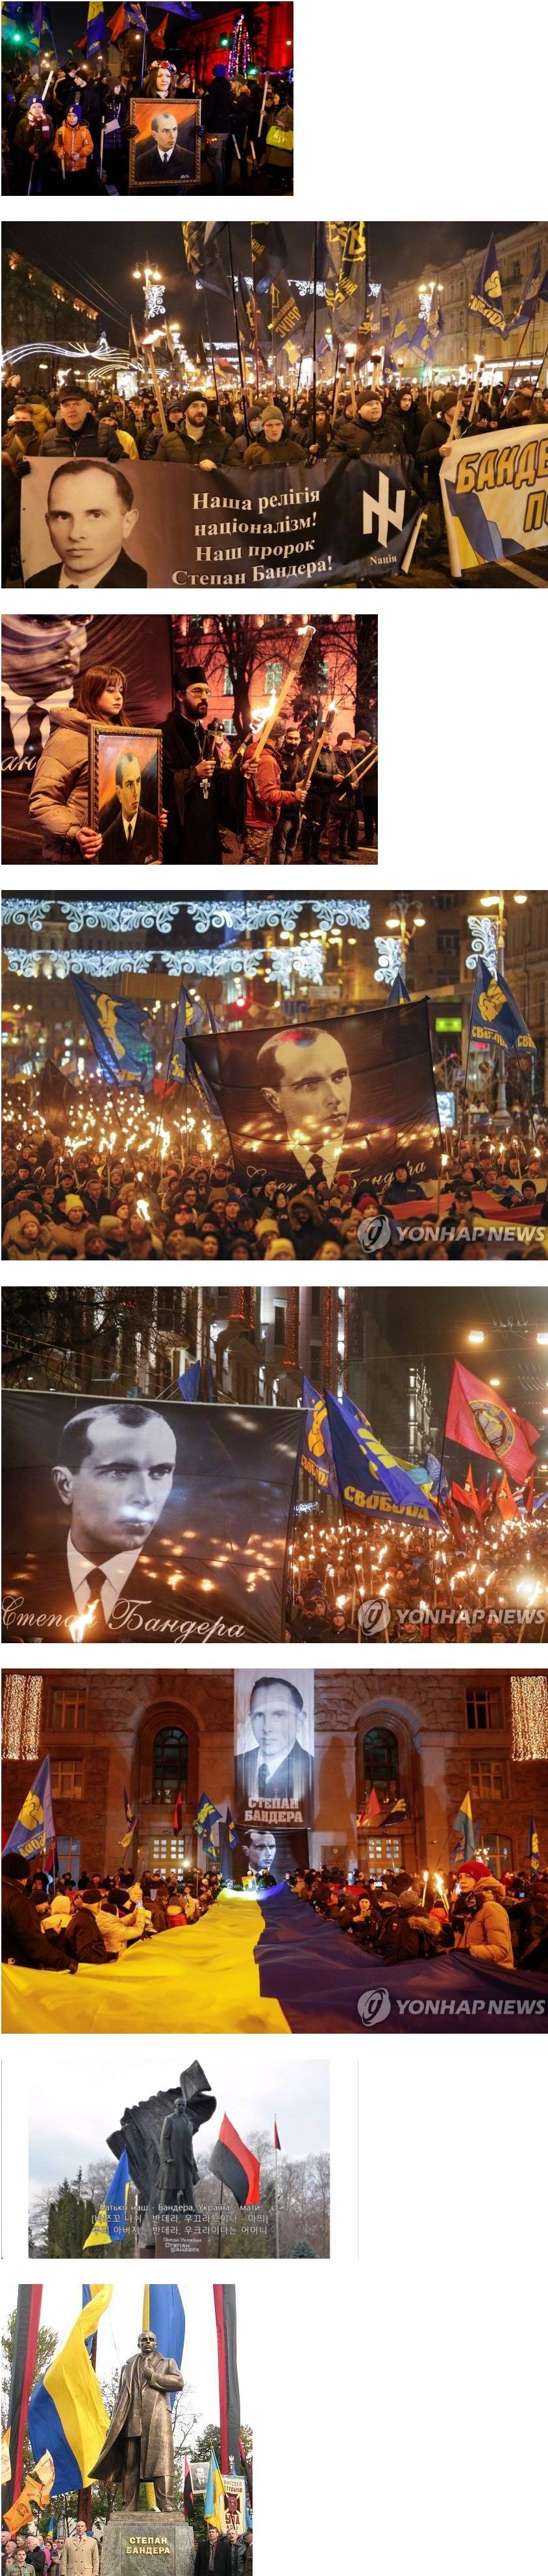 우크라이나의 위대한 국부